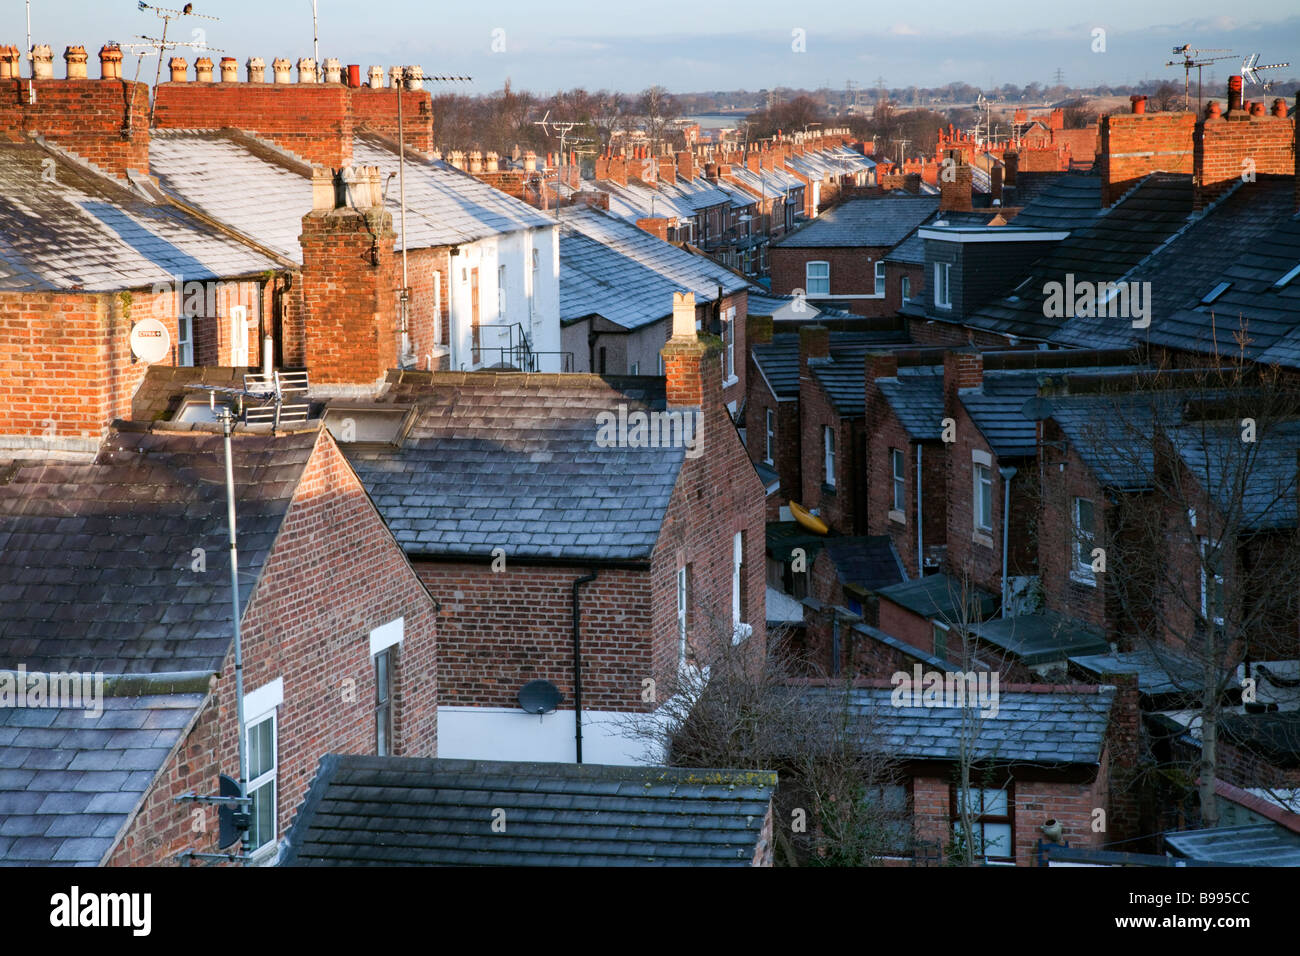 Am frühen Morgen Blick über die Dächer von Reihenhäusern in Chester City, Anzeigen overcrouding der Häuser in der Stadt, Cheshire, England, Großbritannien Stockfoto